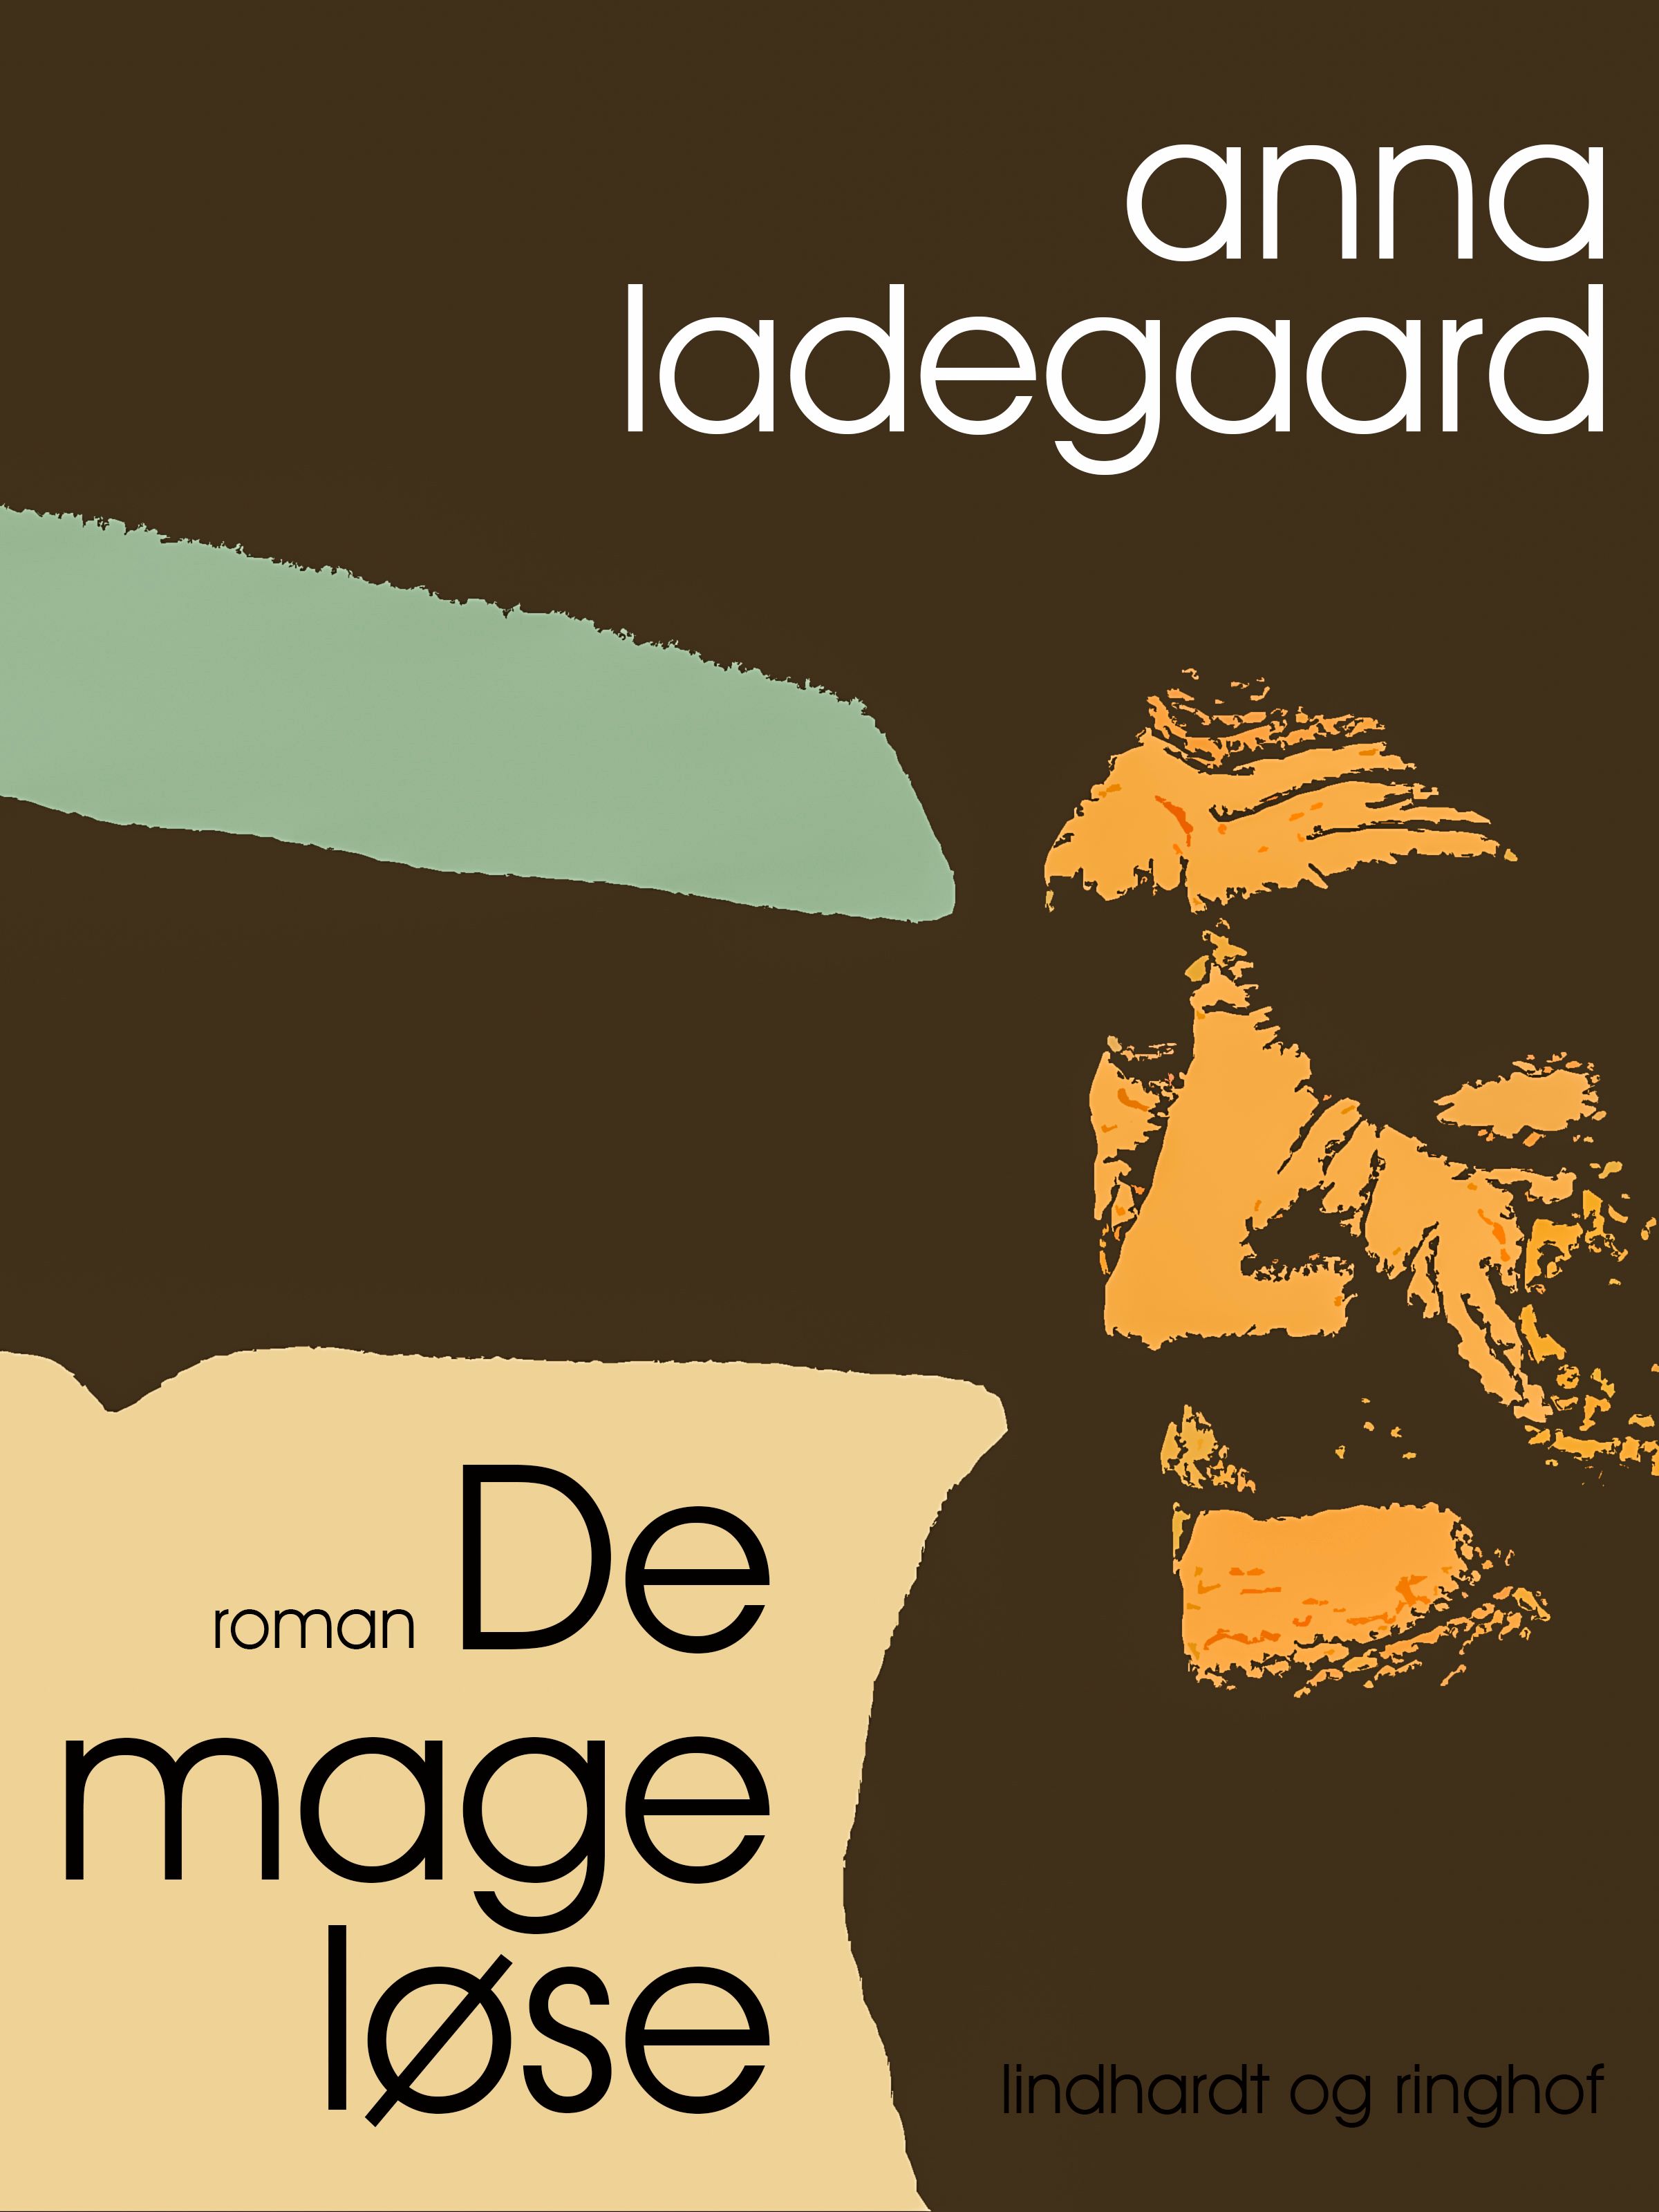 De mageløse, e-bog af Anna Ladegaard